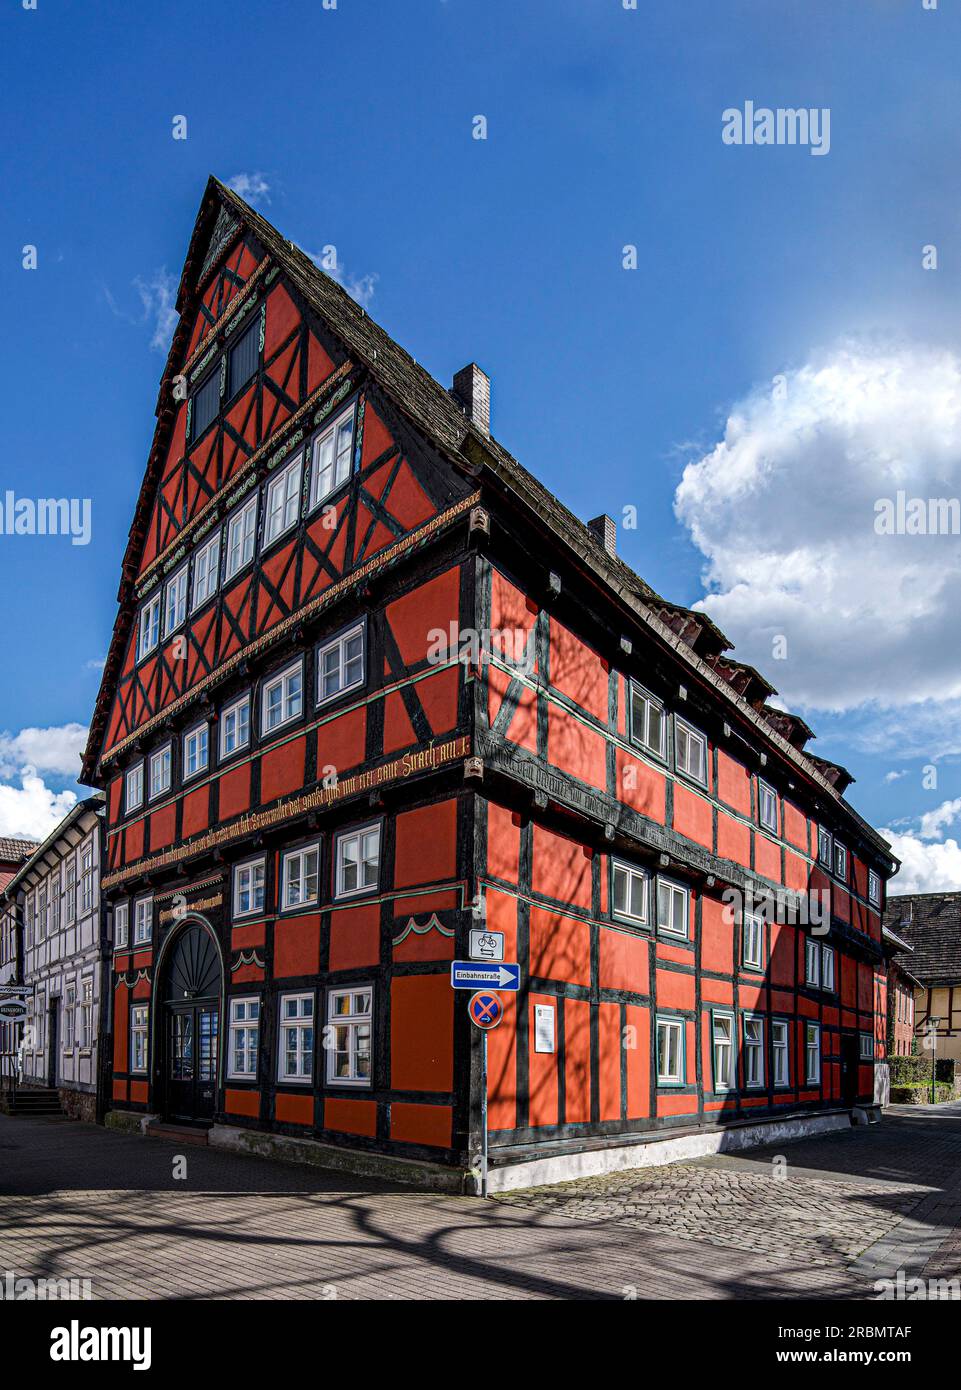 Maison à colombages datant du début de la Renaissance (1541) dans la vieille ville de Höxter, Weserbergland, Rhénanie du Nord-Westphalie, Allemagne Banque D'Images